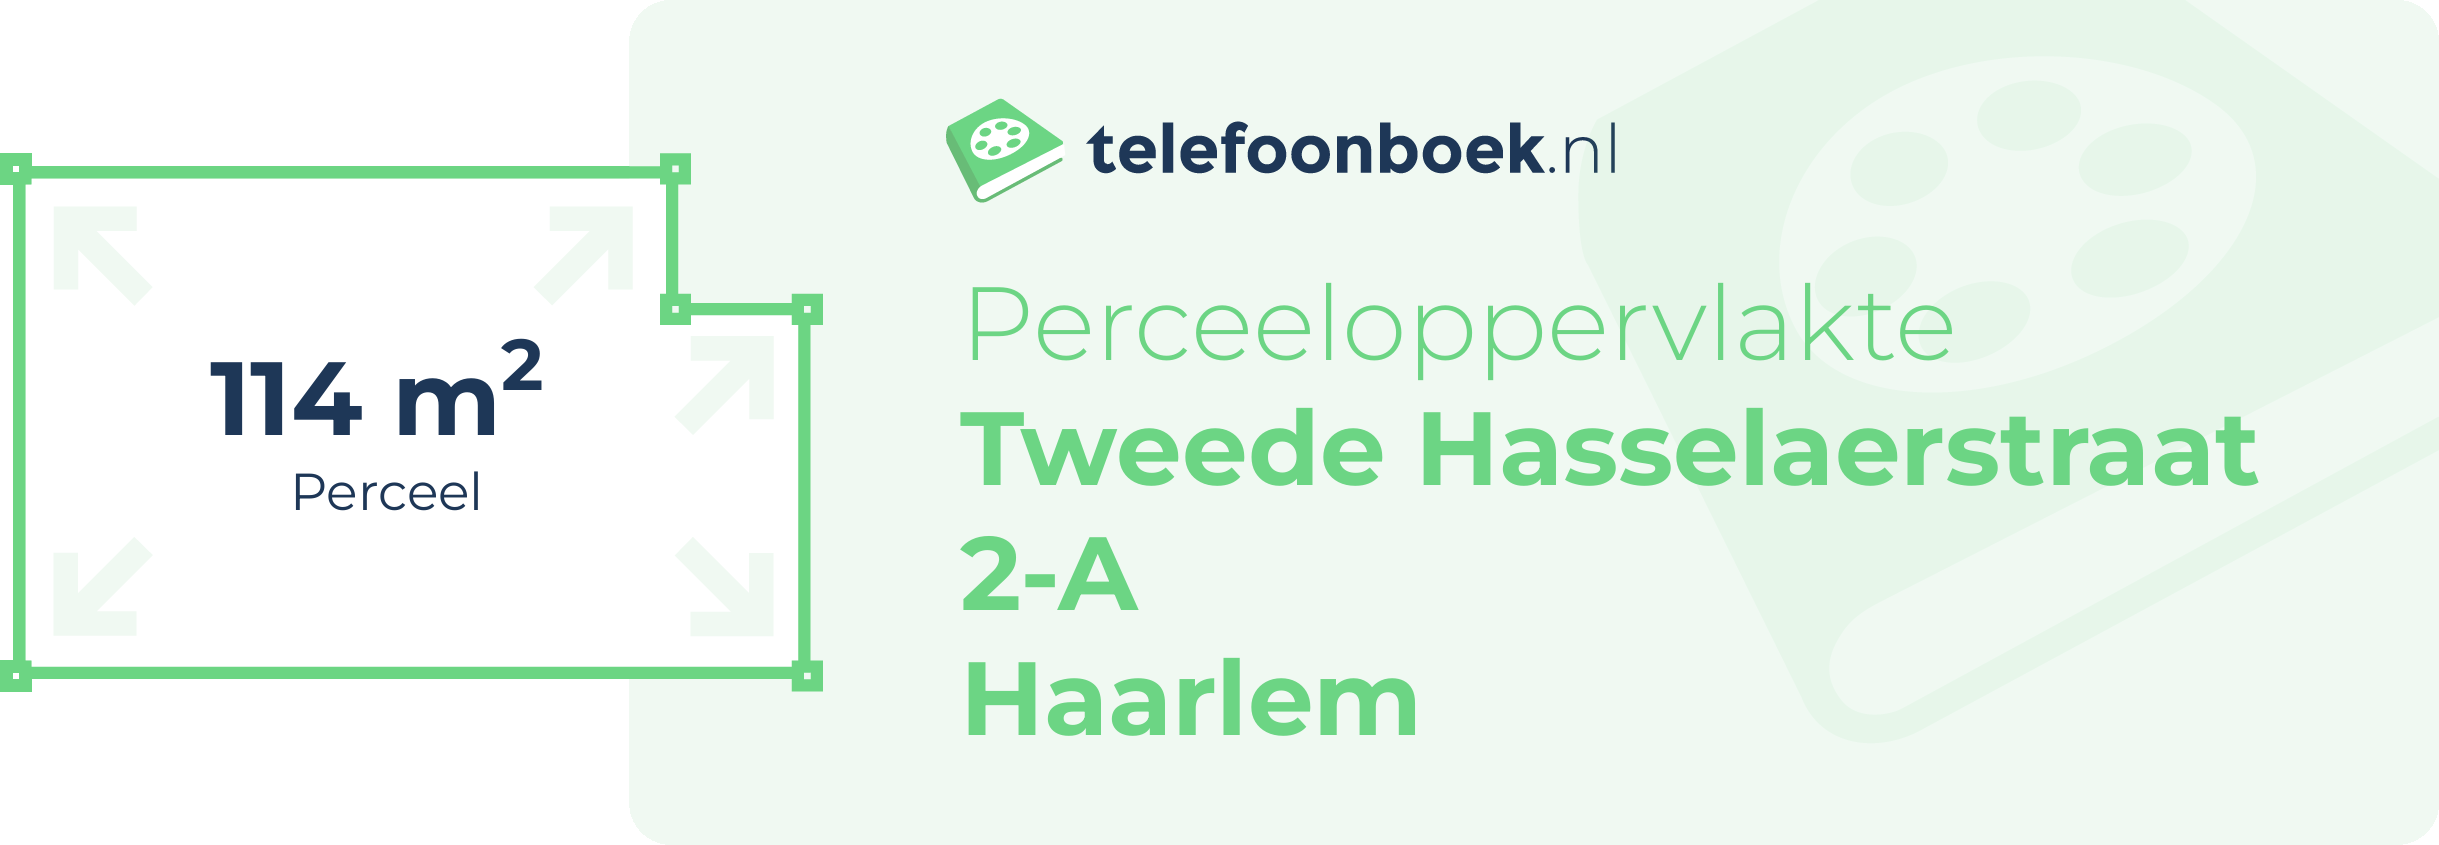 Perceeloppervlakte Tweede Hasselaerstraat 2-A Haarlem